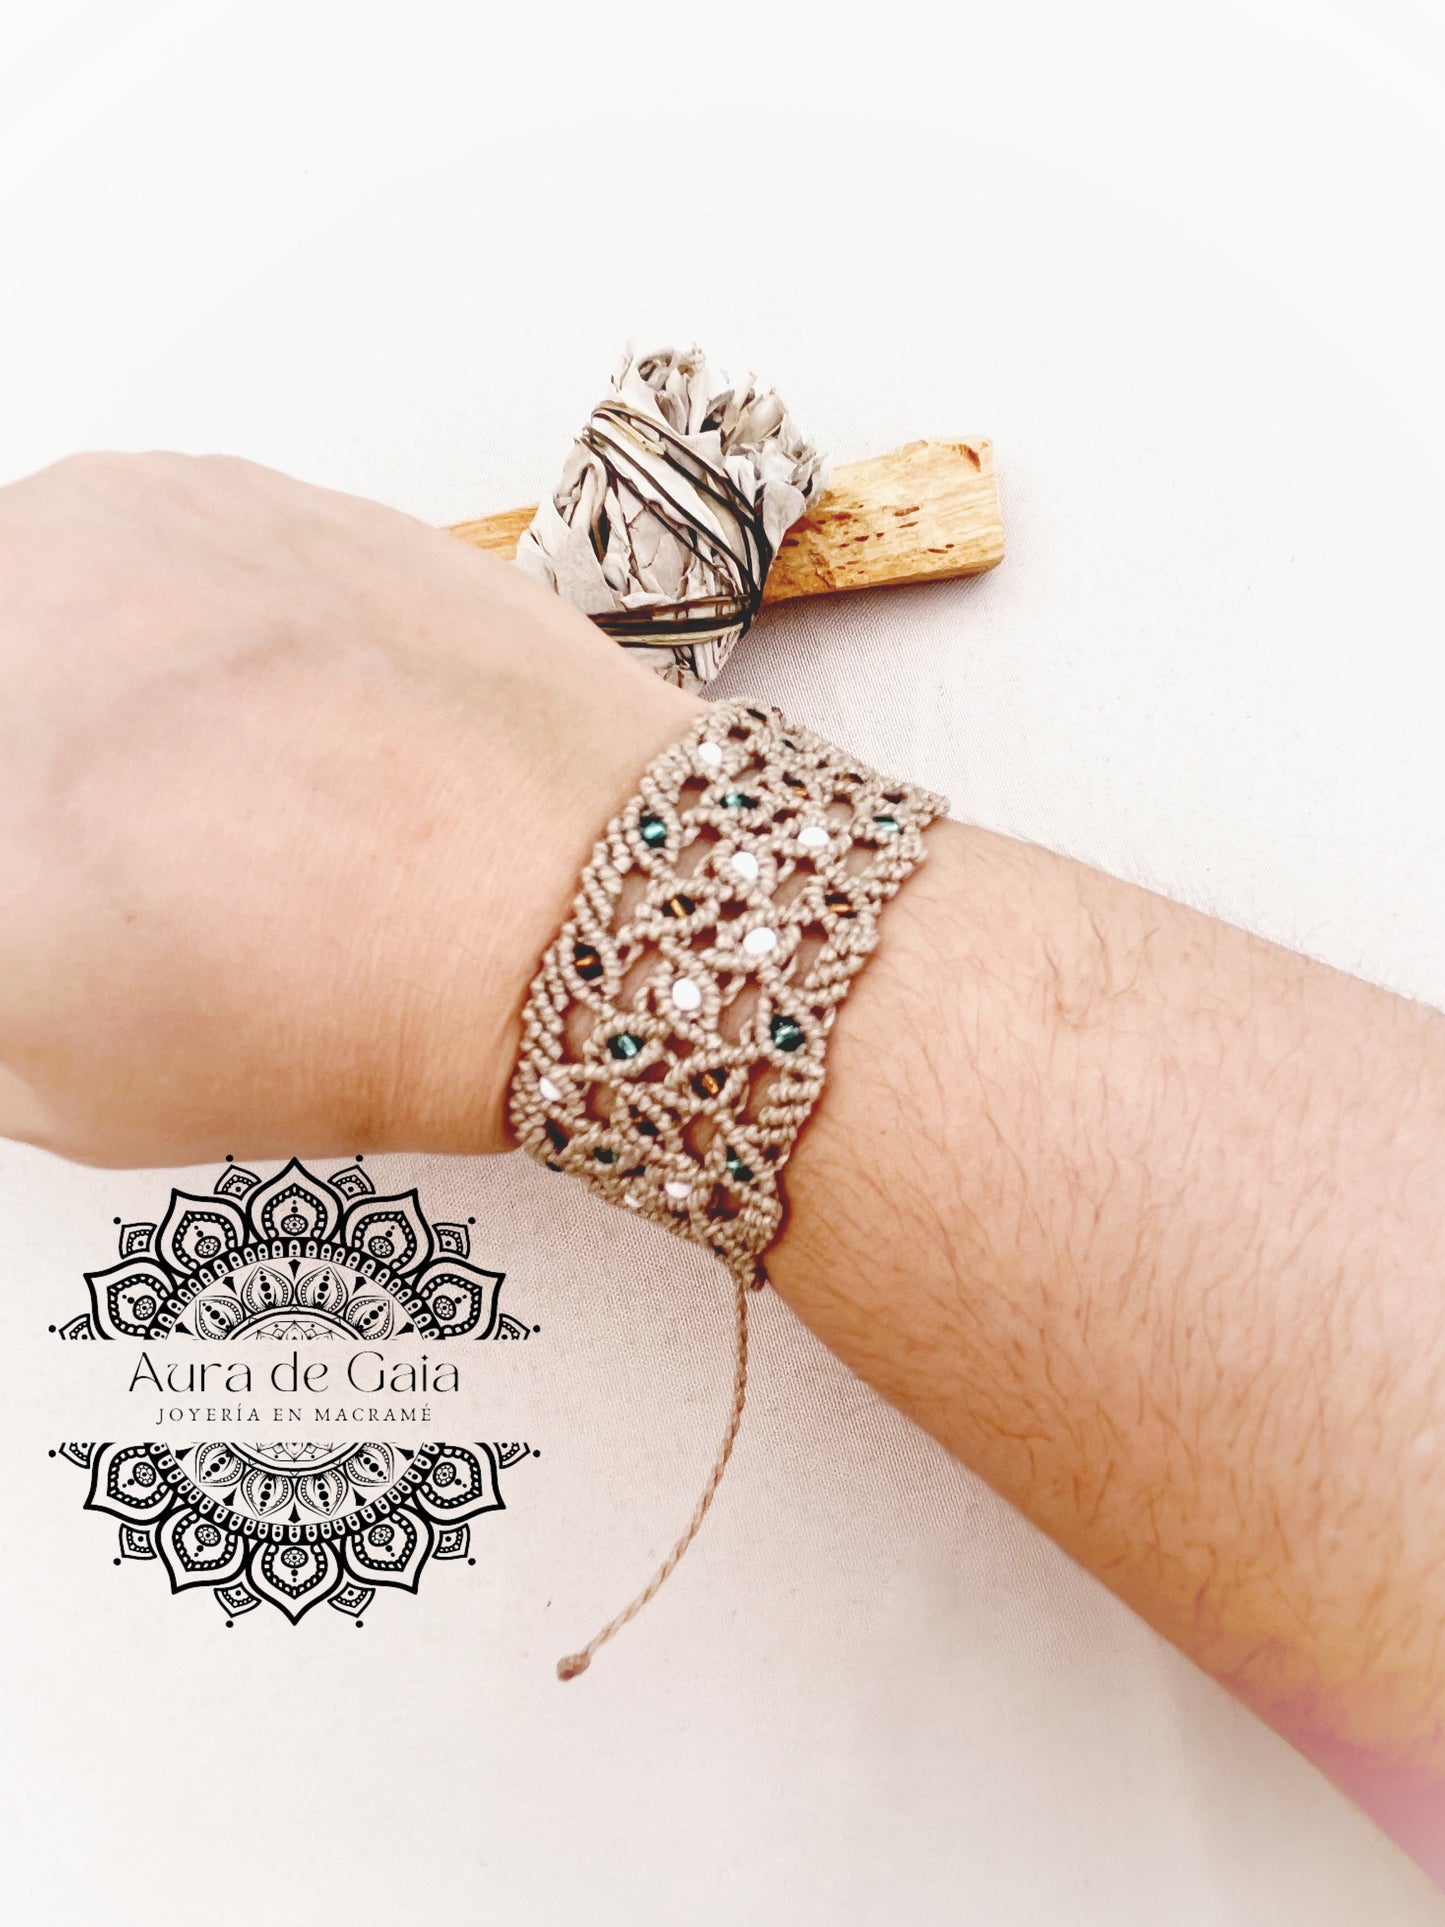 Pulsera Hippie con Abalorios en Macramé - Hippie bracelet with beads macrame